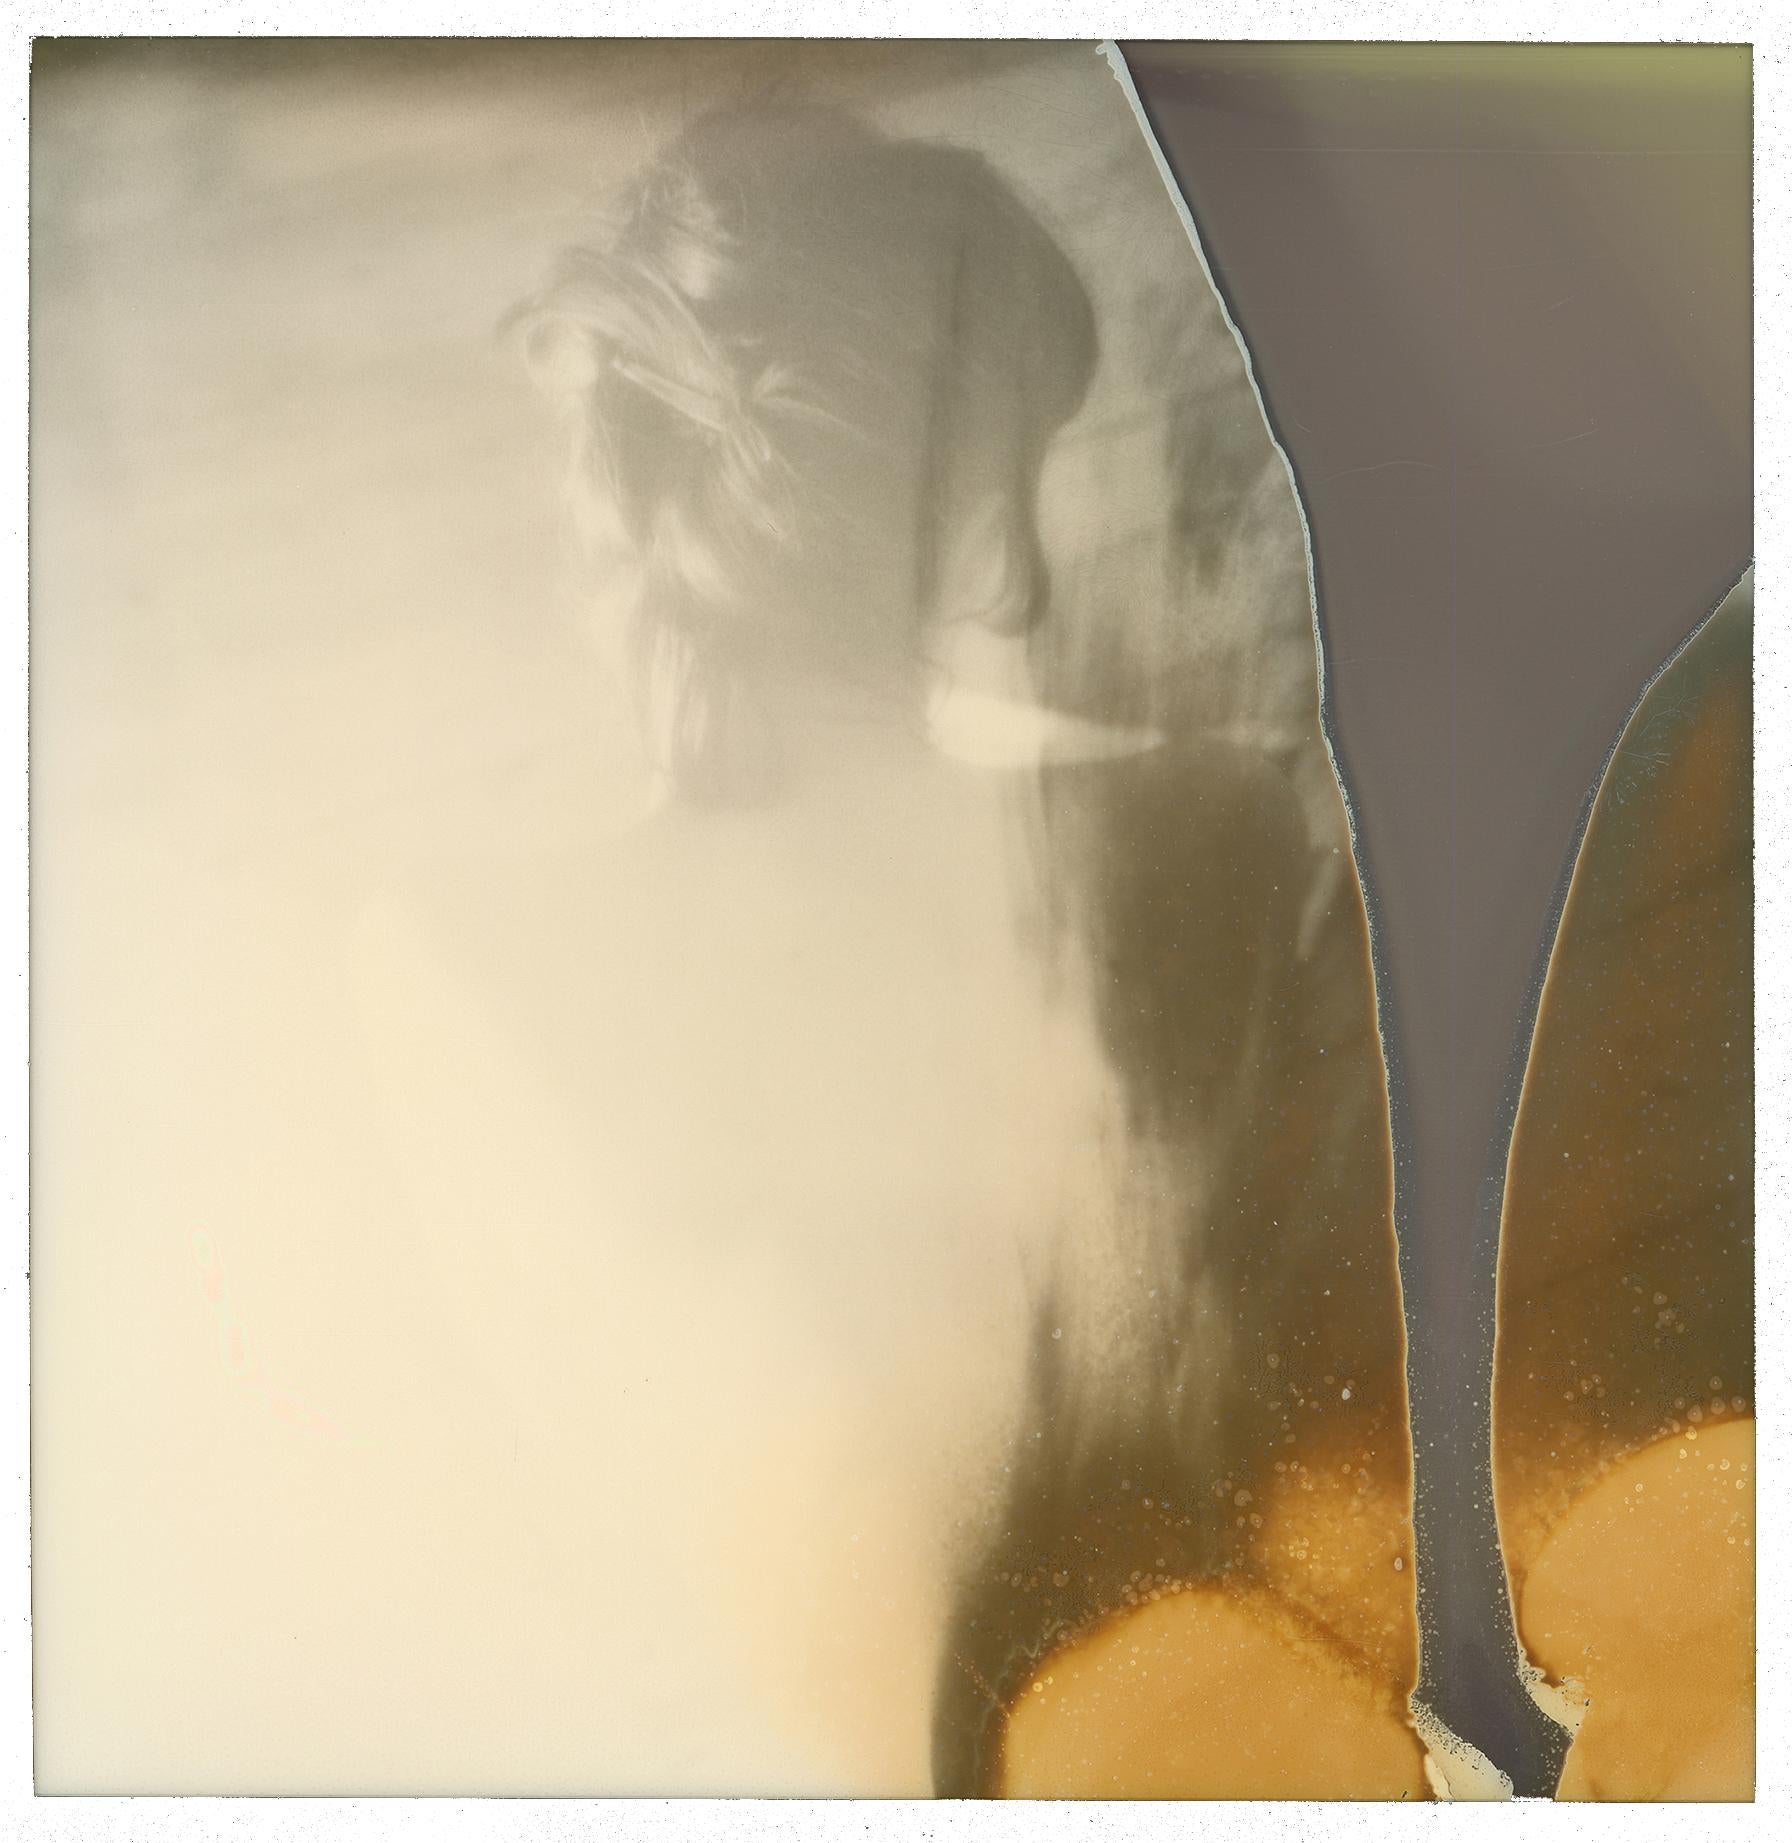 Disappear - Zeitgenössisch, Konzeptionell, Polaroid, 21. Jahrhundert, Porträt, Farbe – Photograph von Urizen Freaza